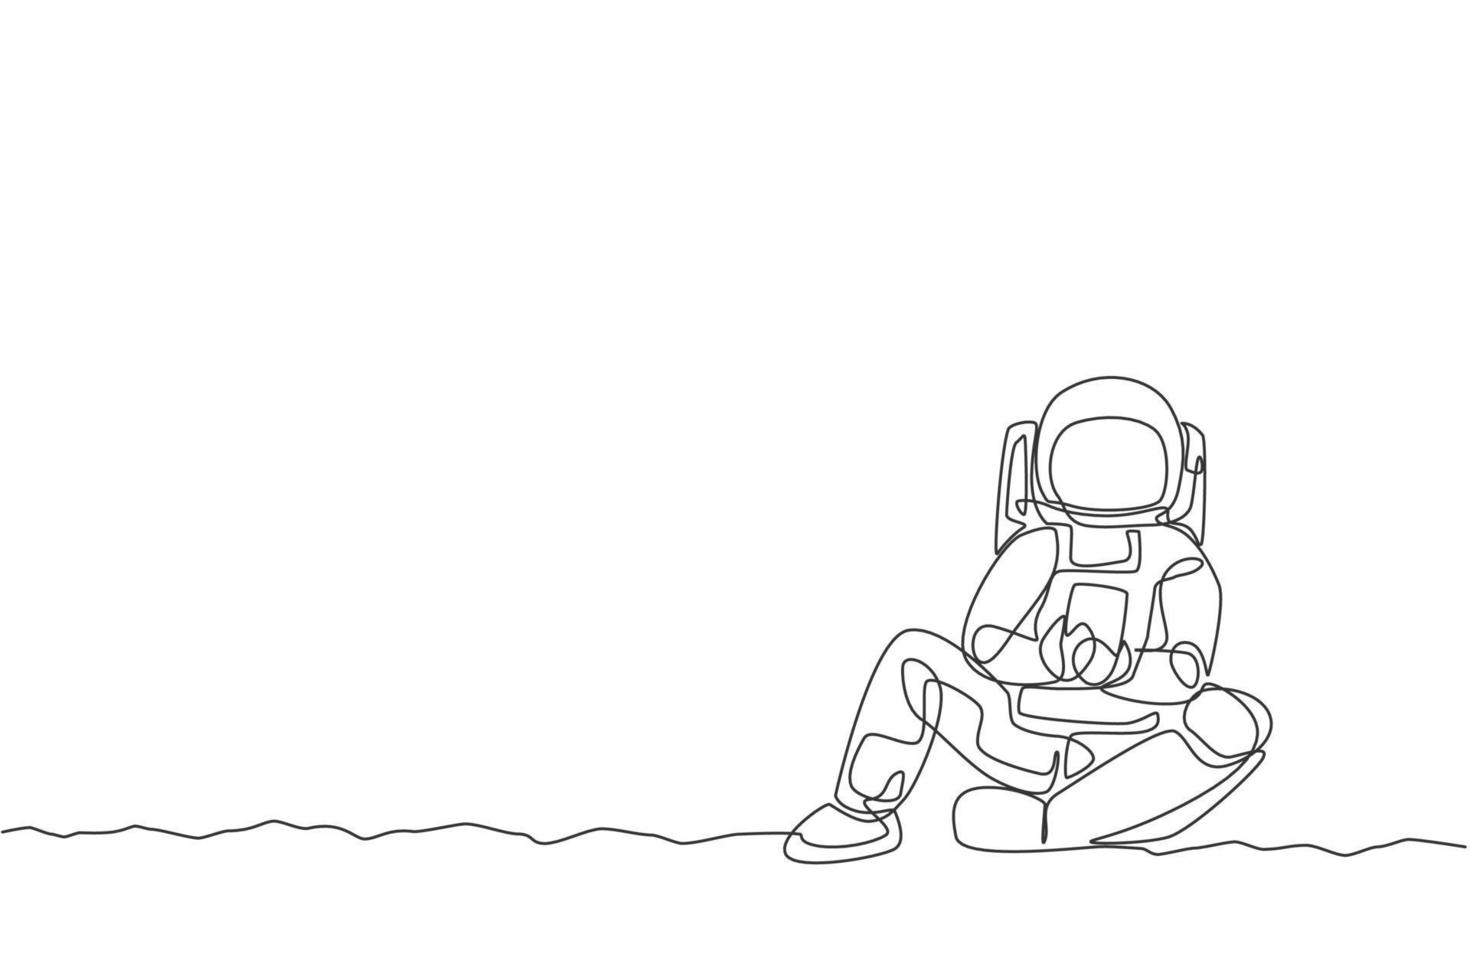 een doorlopende lijntekening van een jonge ruimtevaarder op een ruimtepak die ontspant op het maanoppervlak tijdens het sms'en. astronaut zakelijk kantoor met deep space-concept. enkele lijn tekenen ontwerp vectorillustratie vector